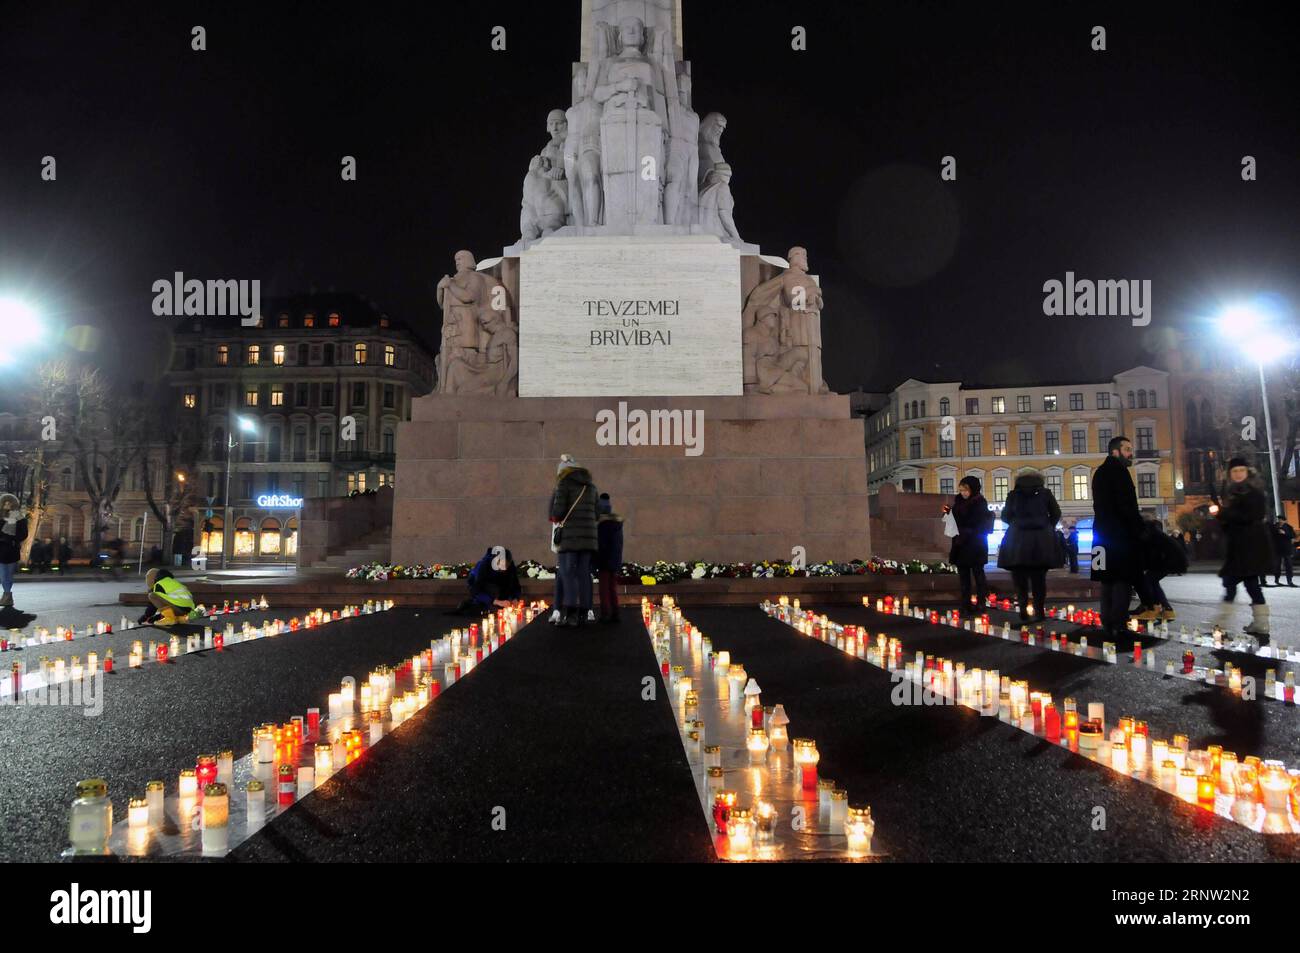 (171130) -- RIGA, 30 novembre 2017 -- des gens allument des bougies devant le monument de la liberté lors d'un événement commémoratif à Riga, capitale de la Lettonie, le 30 novembre 2017. Un certain nombre d'événements ont eu lieu jeudi pour commémorer la pire tragédie de l'Holocauste en Lettonie - le meurtre de 25 000 Juifs en seulement deux jours au cours de l'hiver 1941 dans une forêt à l'extérieur de Riga. ) LETTONIE-RIGA-HOLOCAUSTE-COMMÉMORATION Janis PUBLICATIONxNOTxINxCHN Banque D'Images